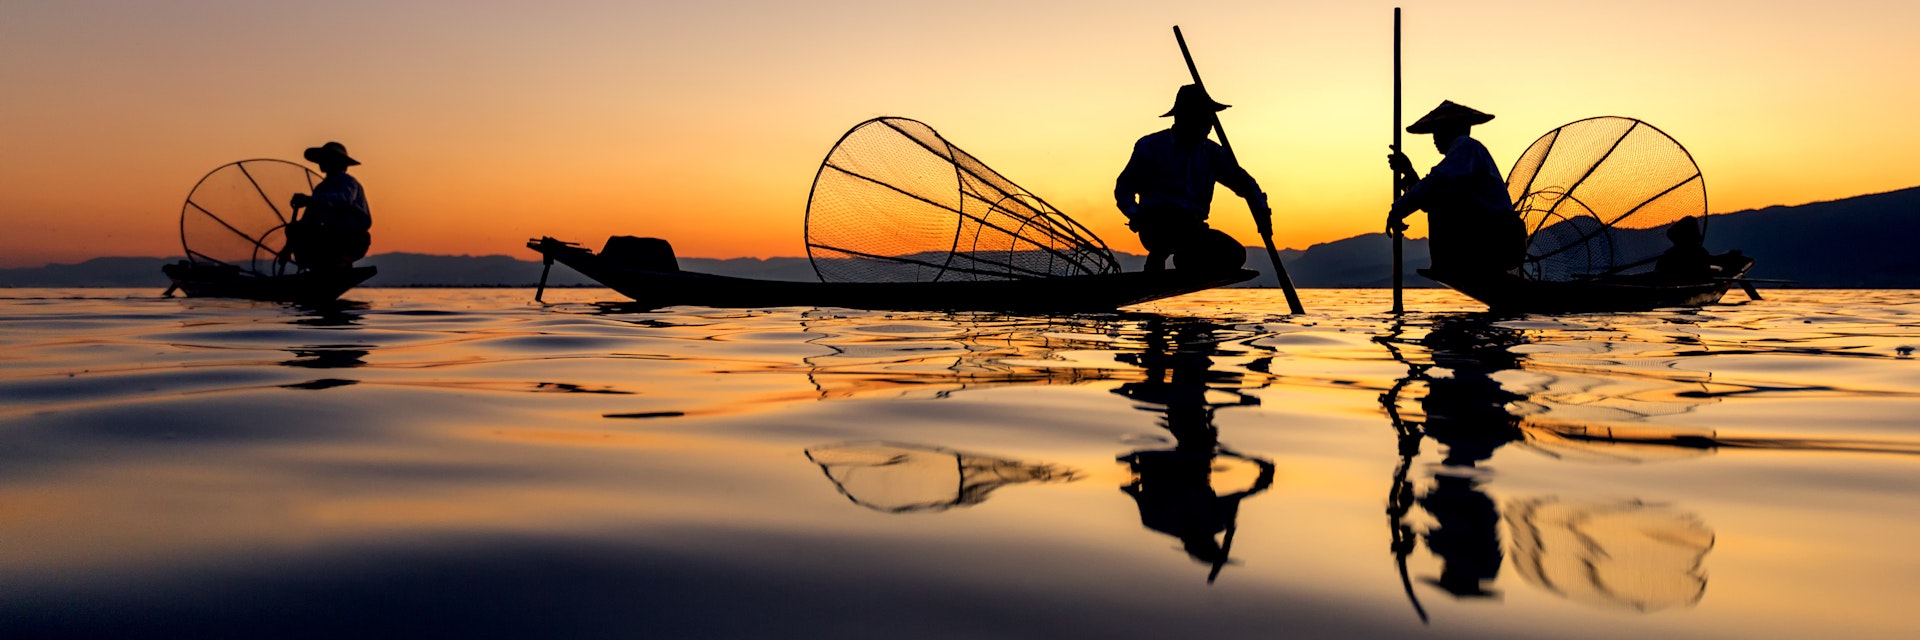 Intha Fishing at Inle Lake, Myanmar